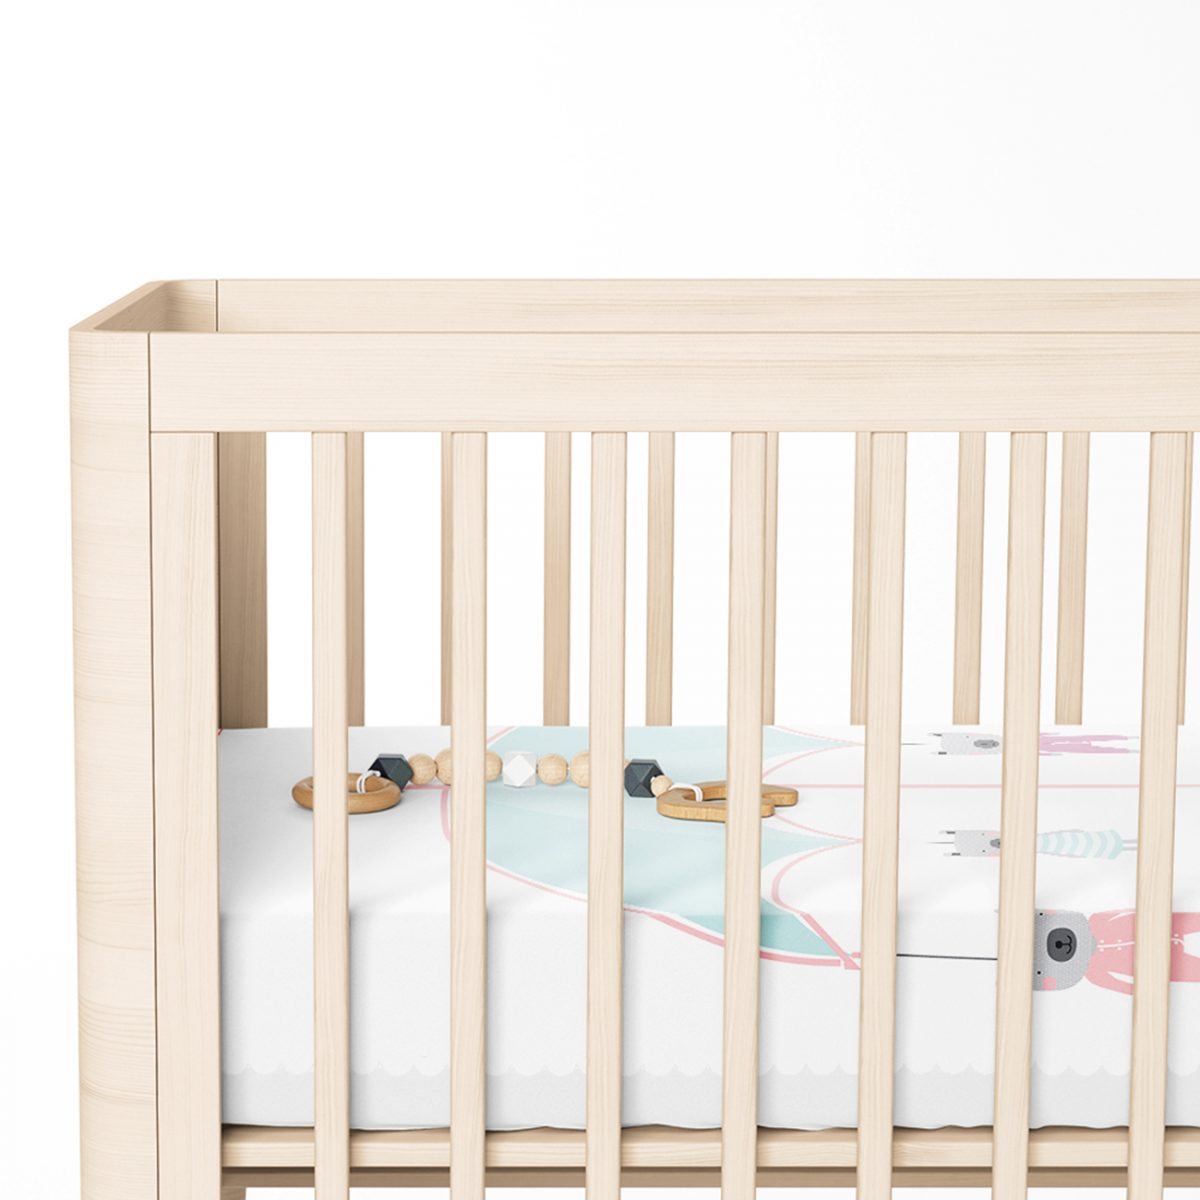 Şemsiye ve Sevimli Ayıcıklar Motifli Bebek Odası Yatak Örtüsü Realhomes